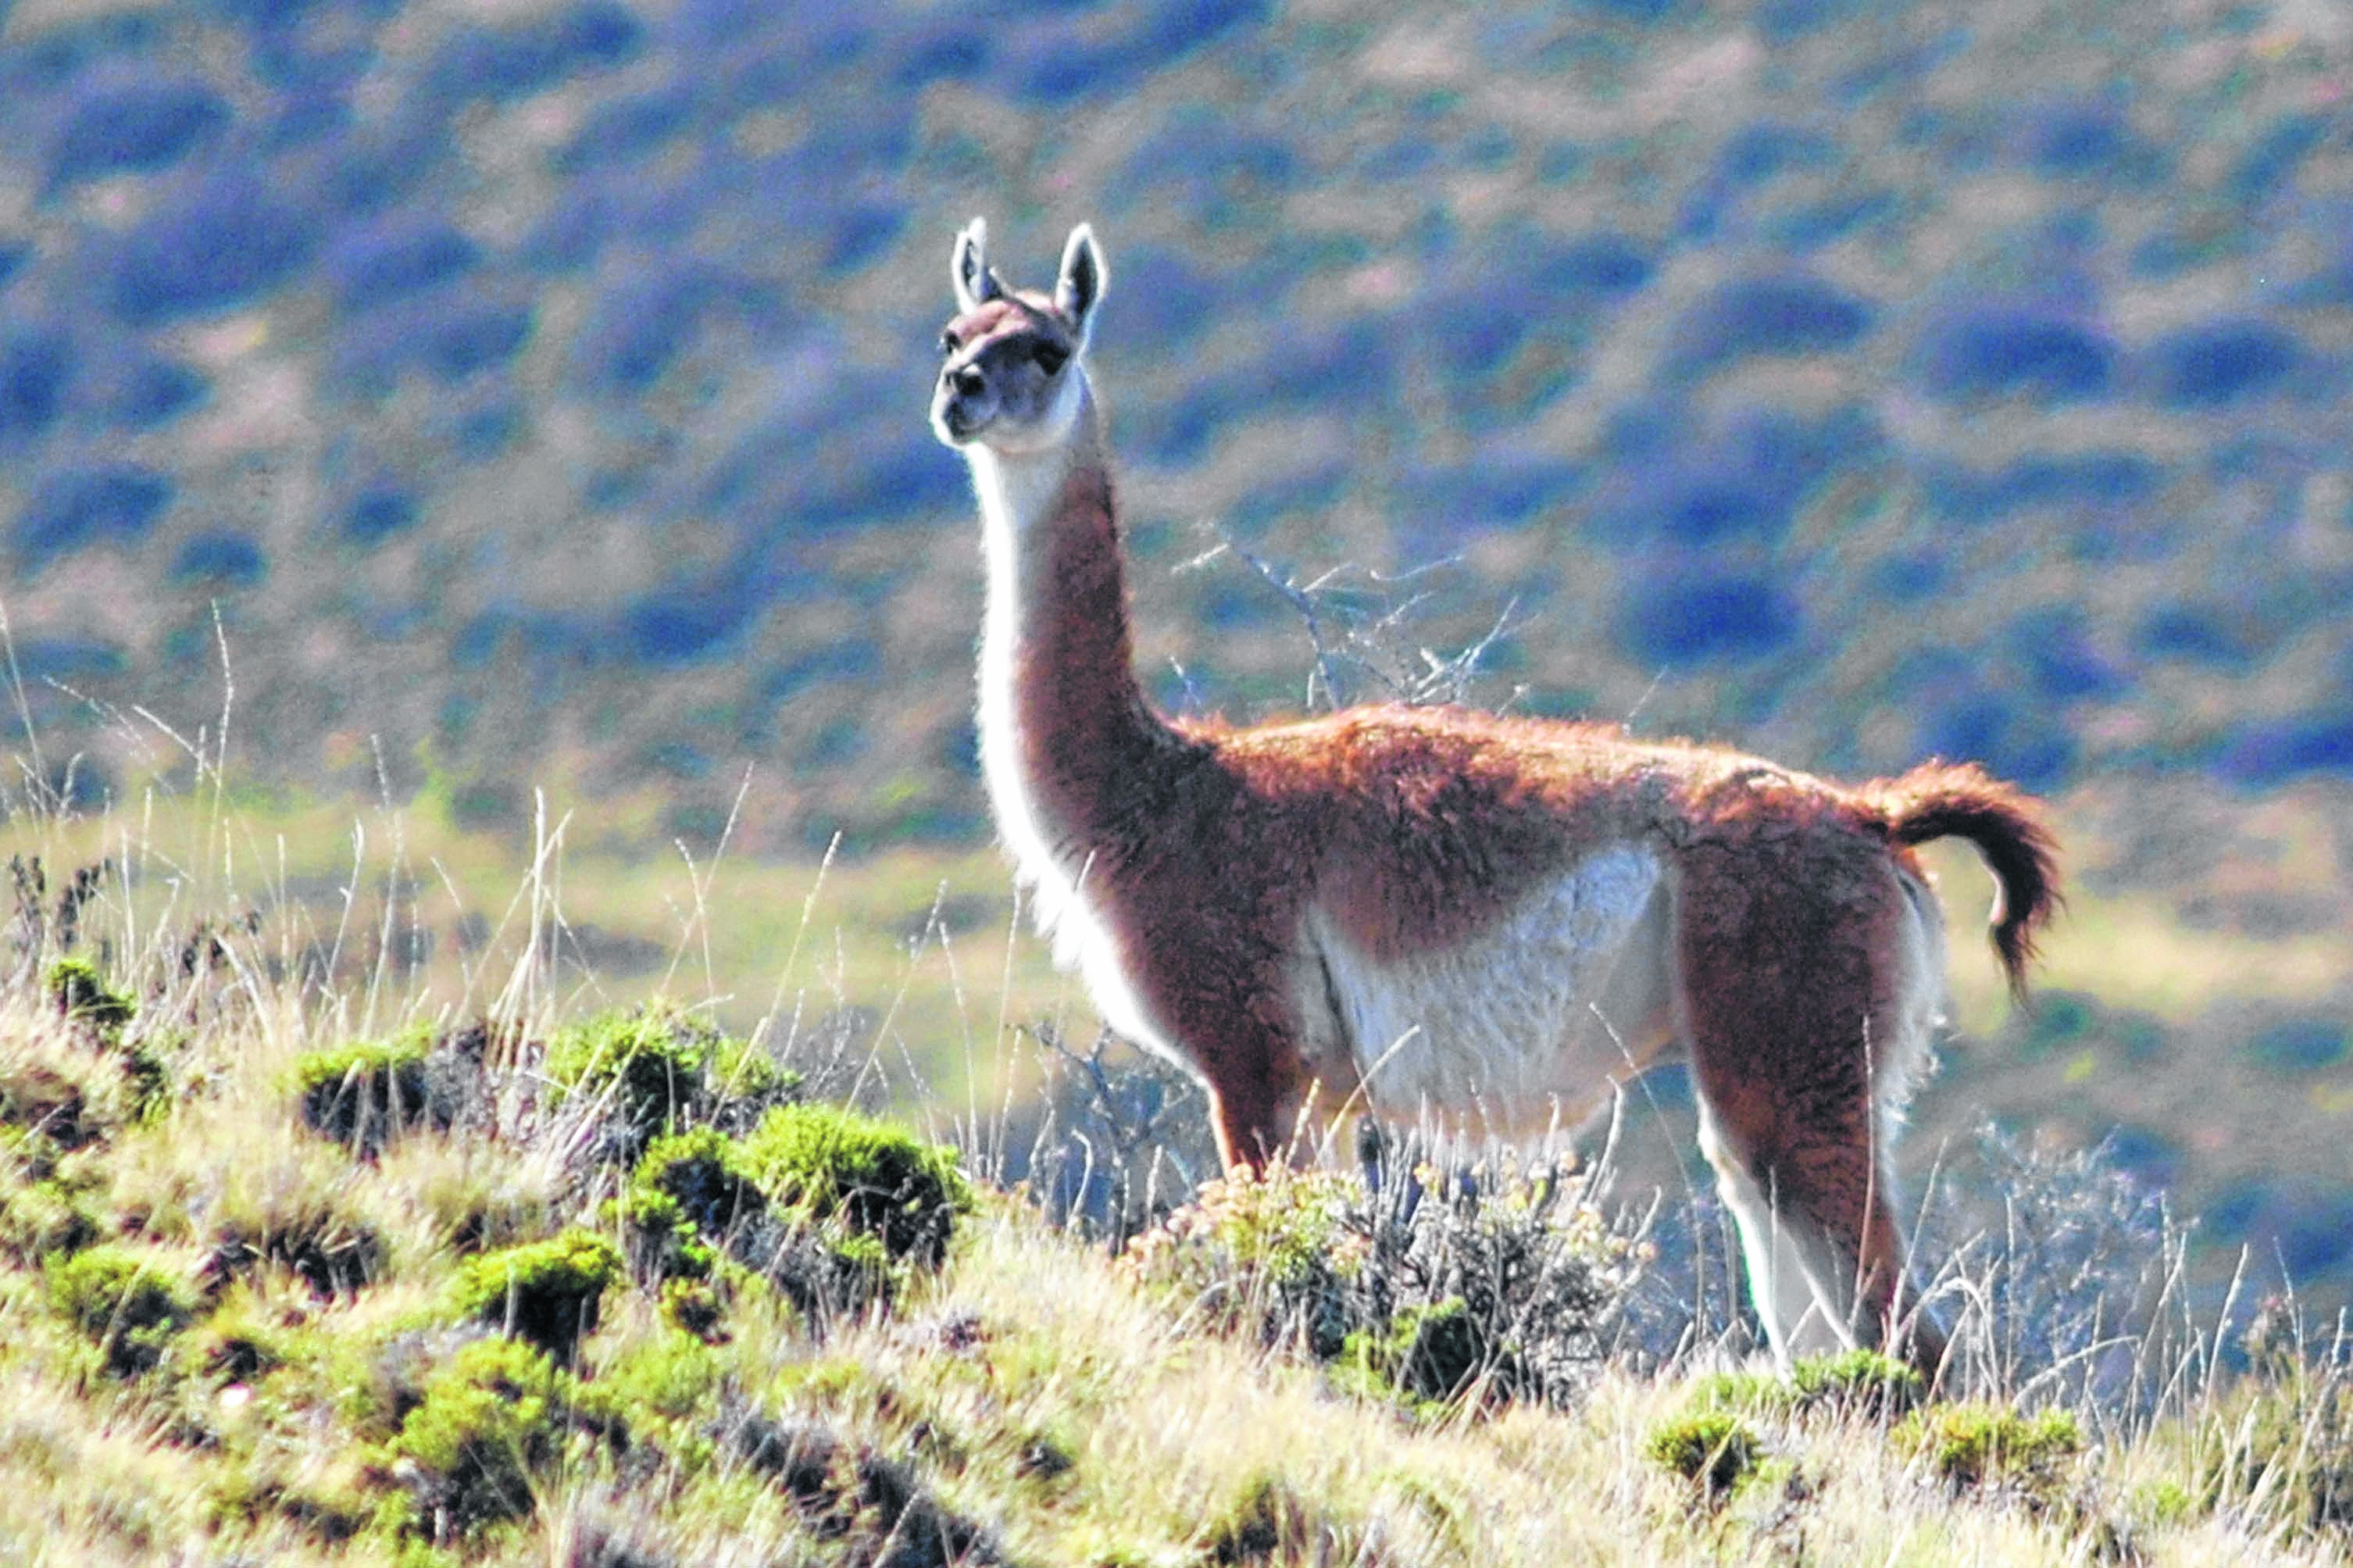 Característico de la estepa patagónica, el guanaco -según la leyenda- vivía en comunidad con el hombre.